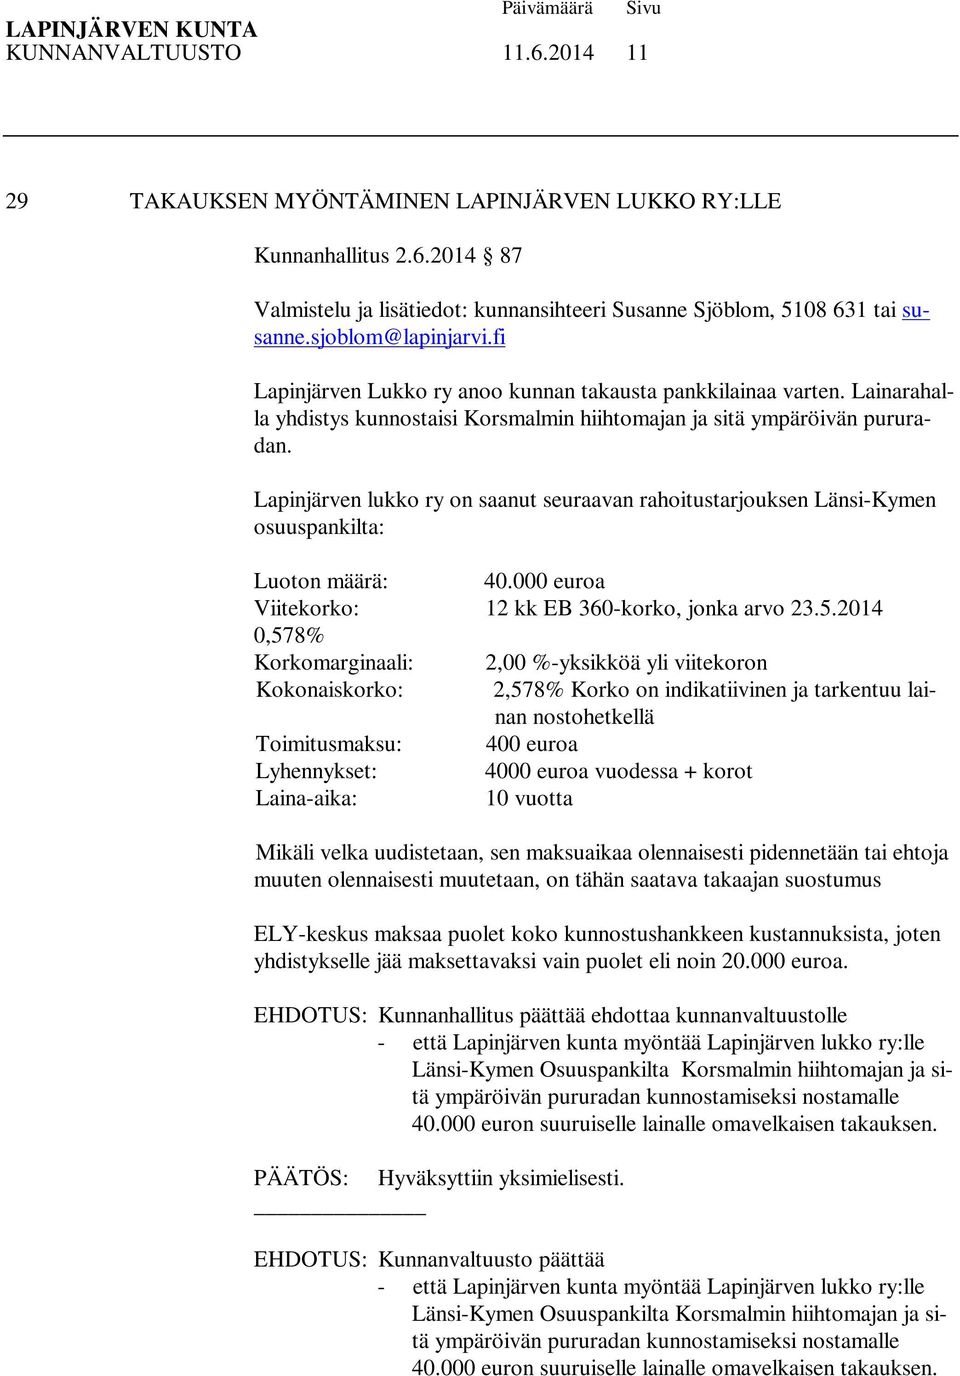 Lapinjärven lukko ry on saanut seuraavan rahoitustarjouksen Länsi-Kymen osuuspankilta: Luoton määrä: 40.000 euroa Viitekorko: 12 kk EB 360-korko, jonka arvo 23.5.